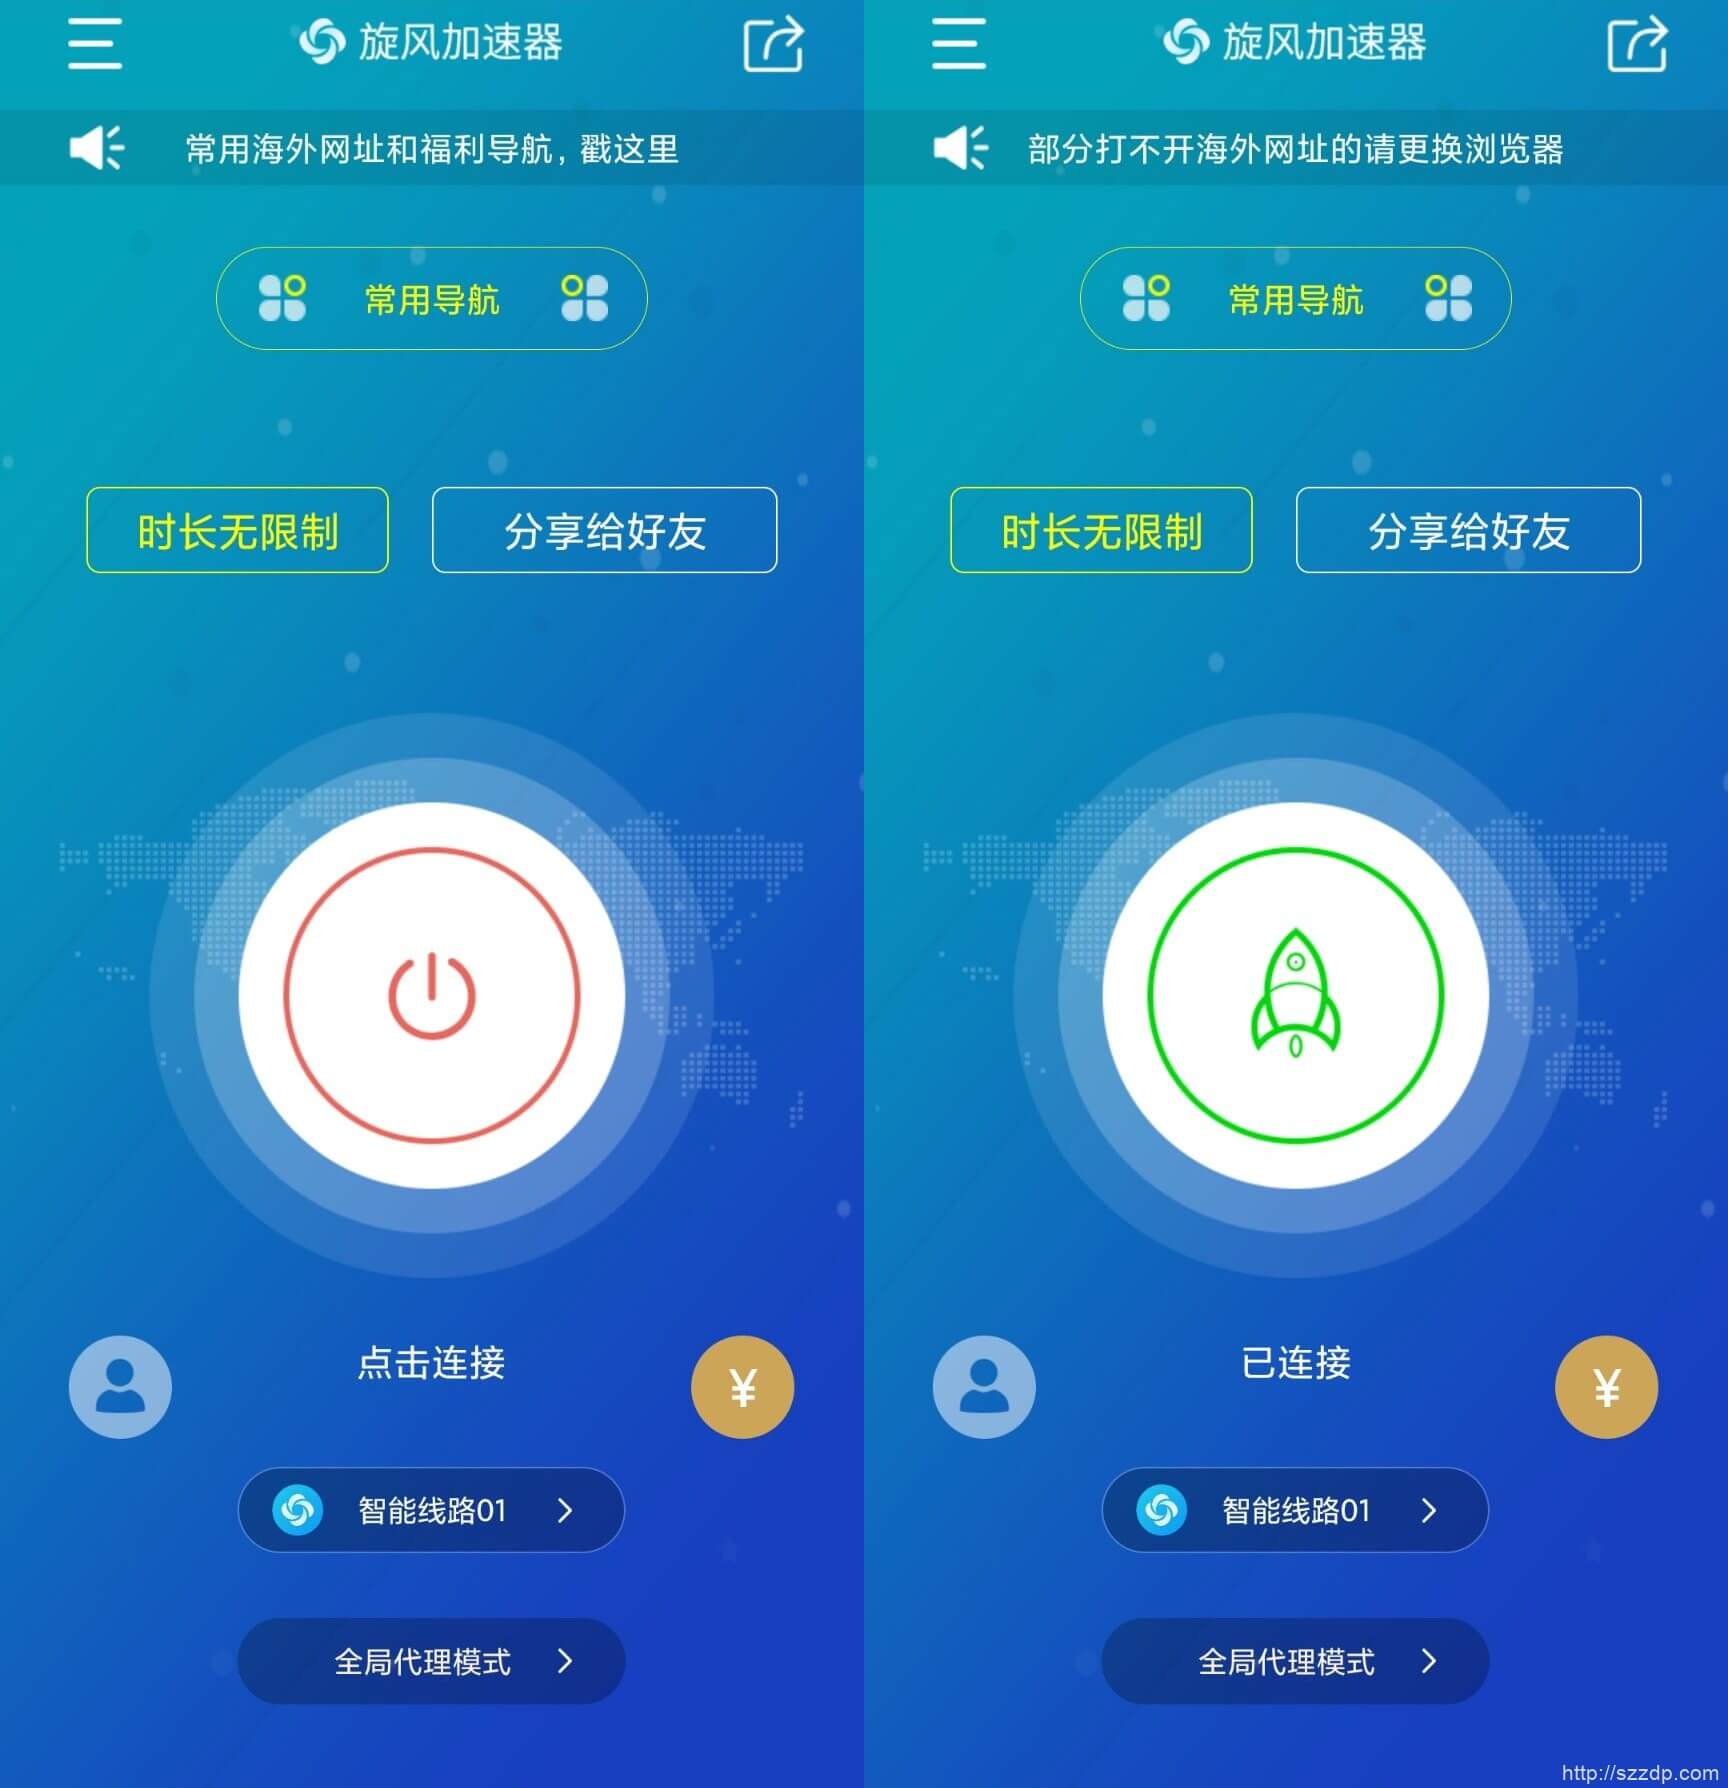 旋风加速器 for Android v6.2.6 中文高级版